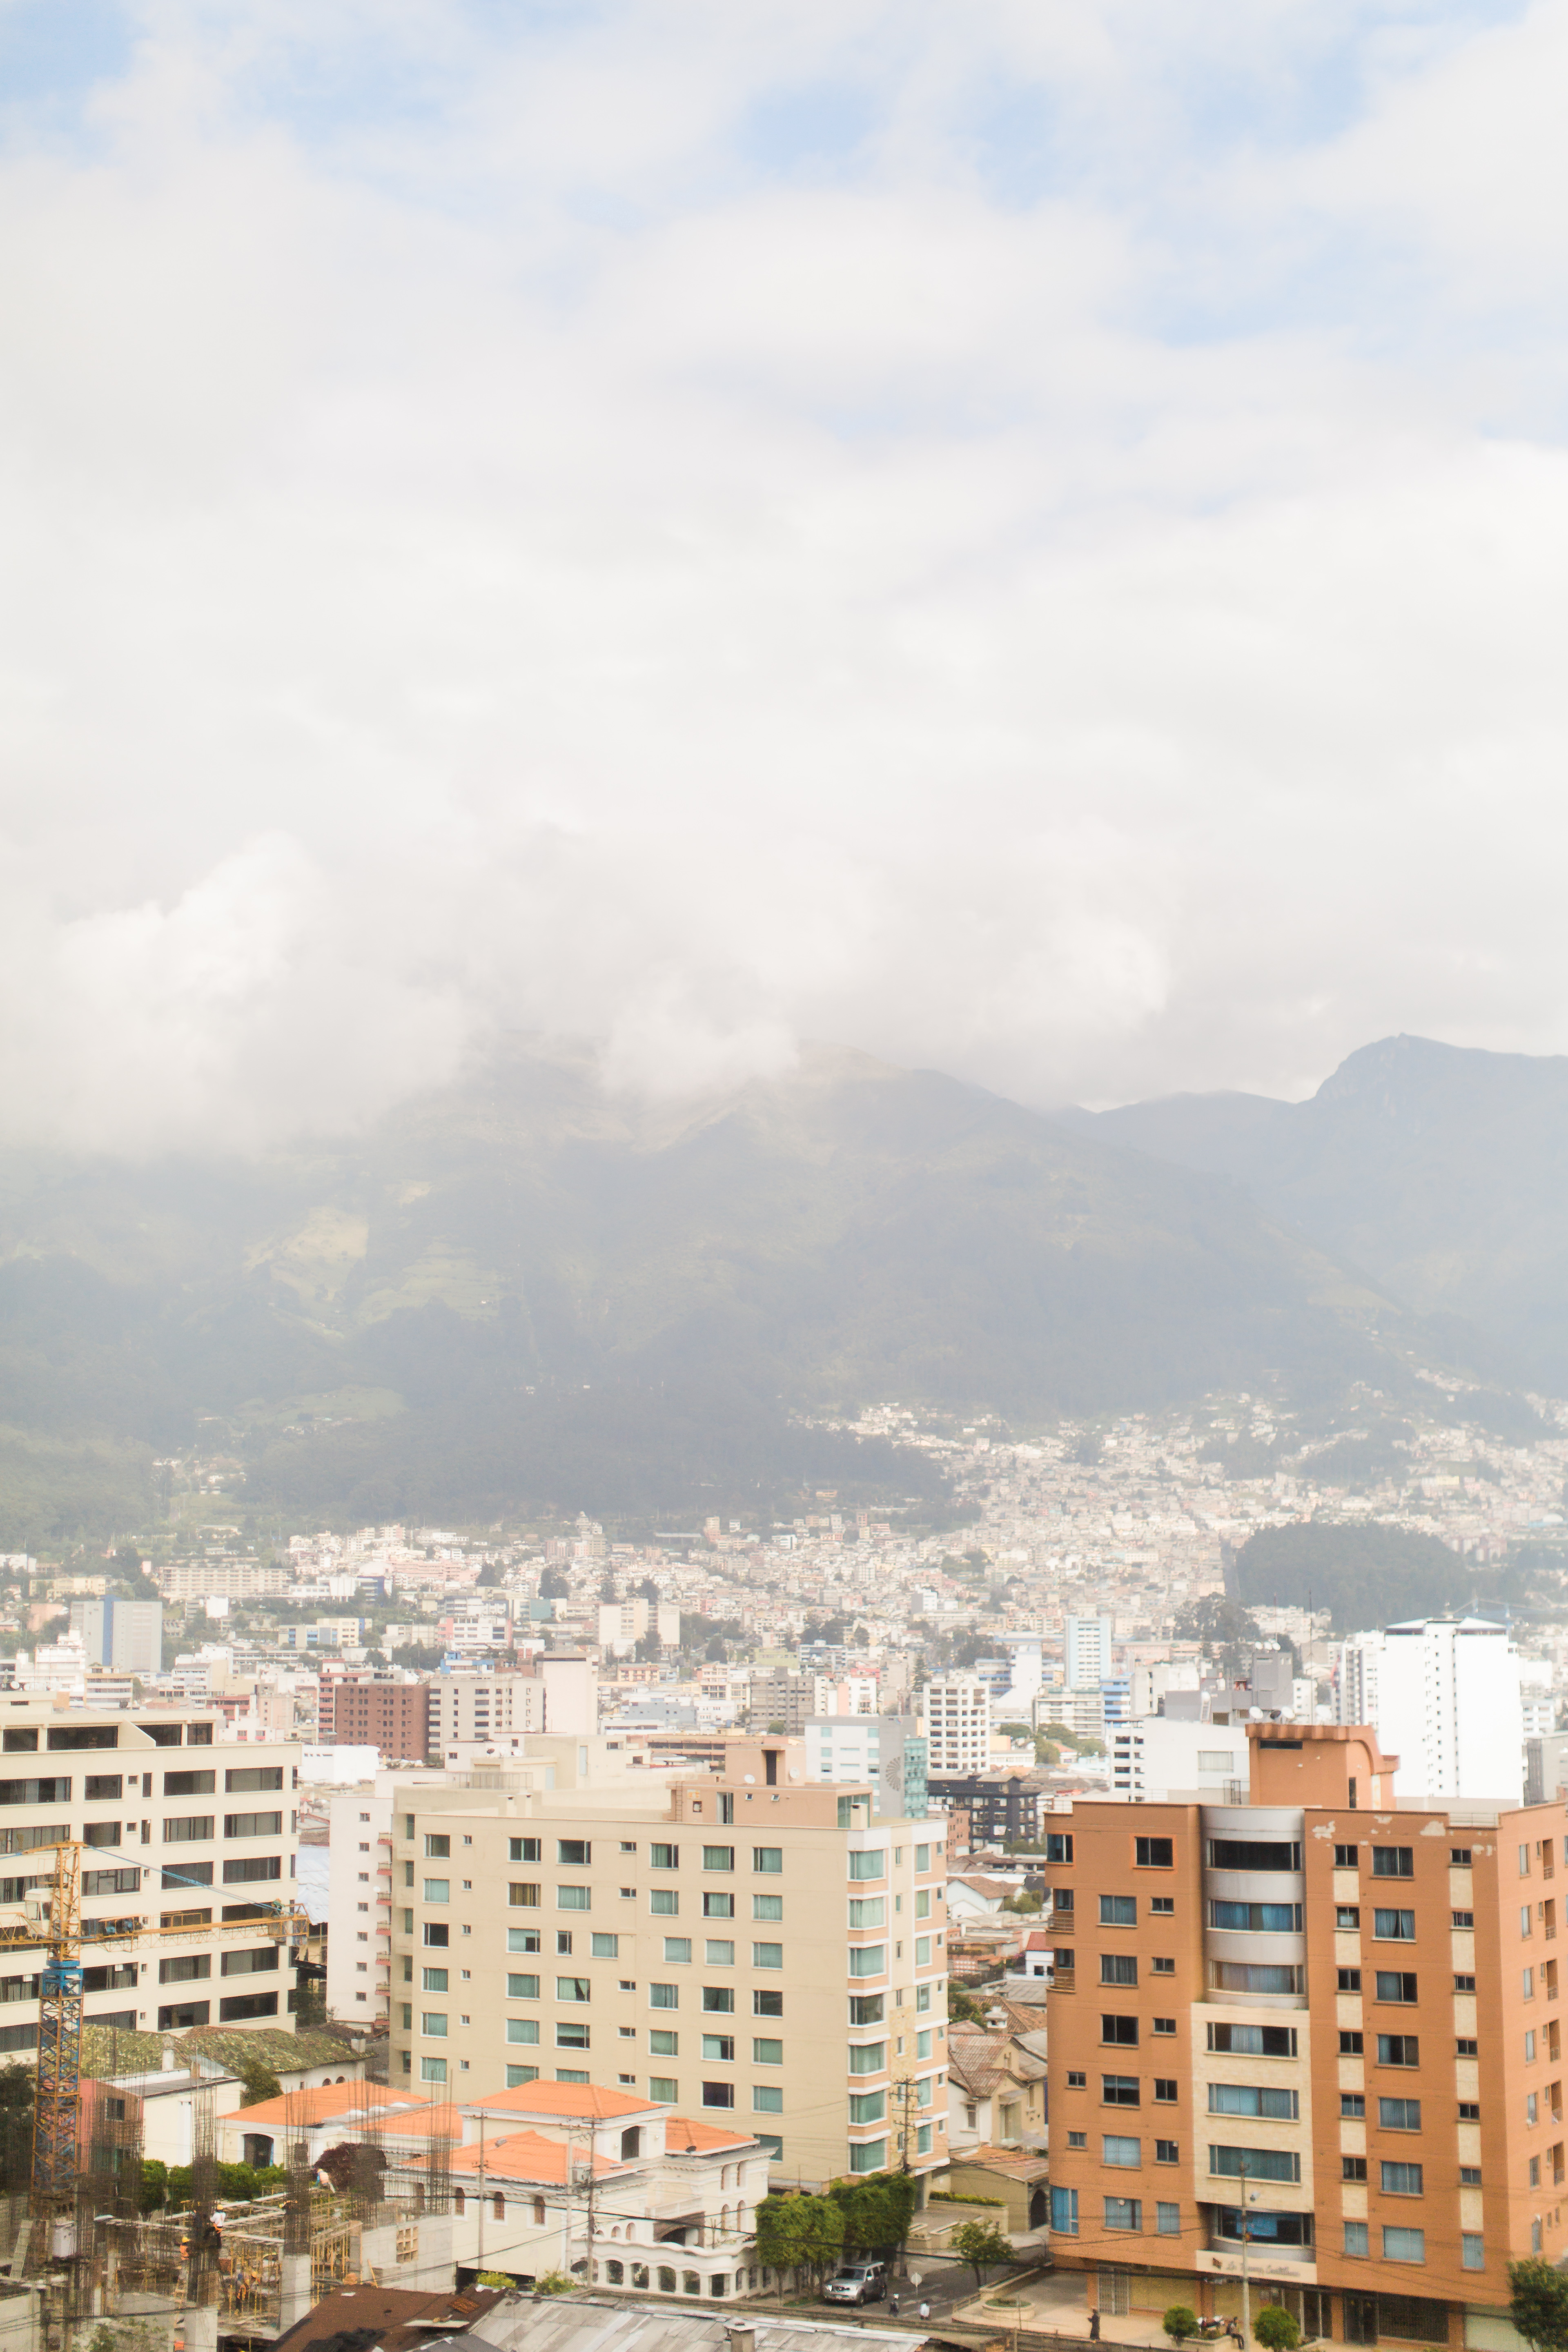 Quito, Ecuador | ©Fleckography 2015 www.fleckography.com, www.m